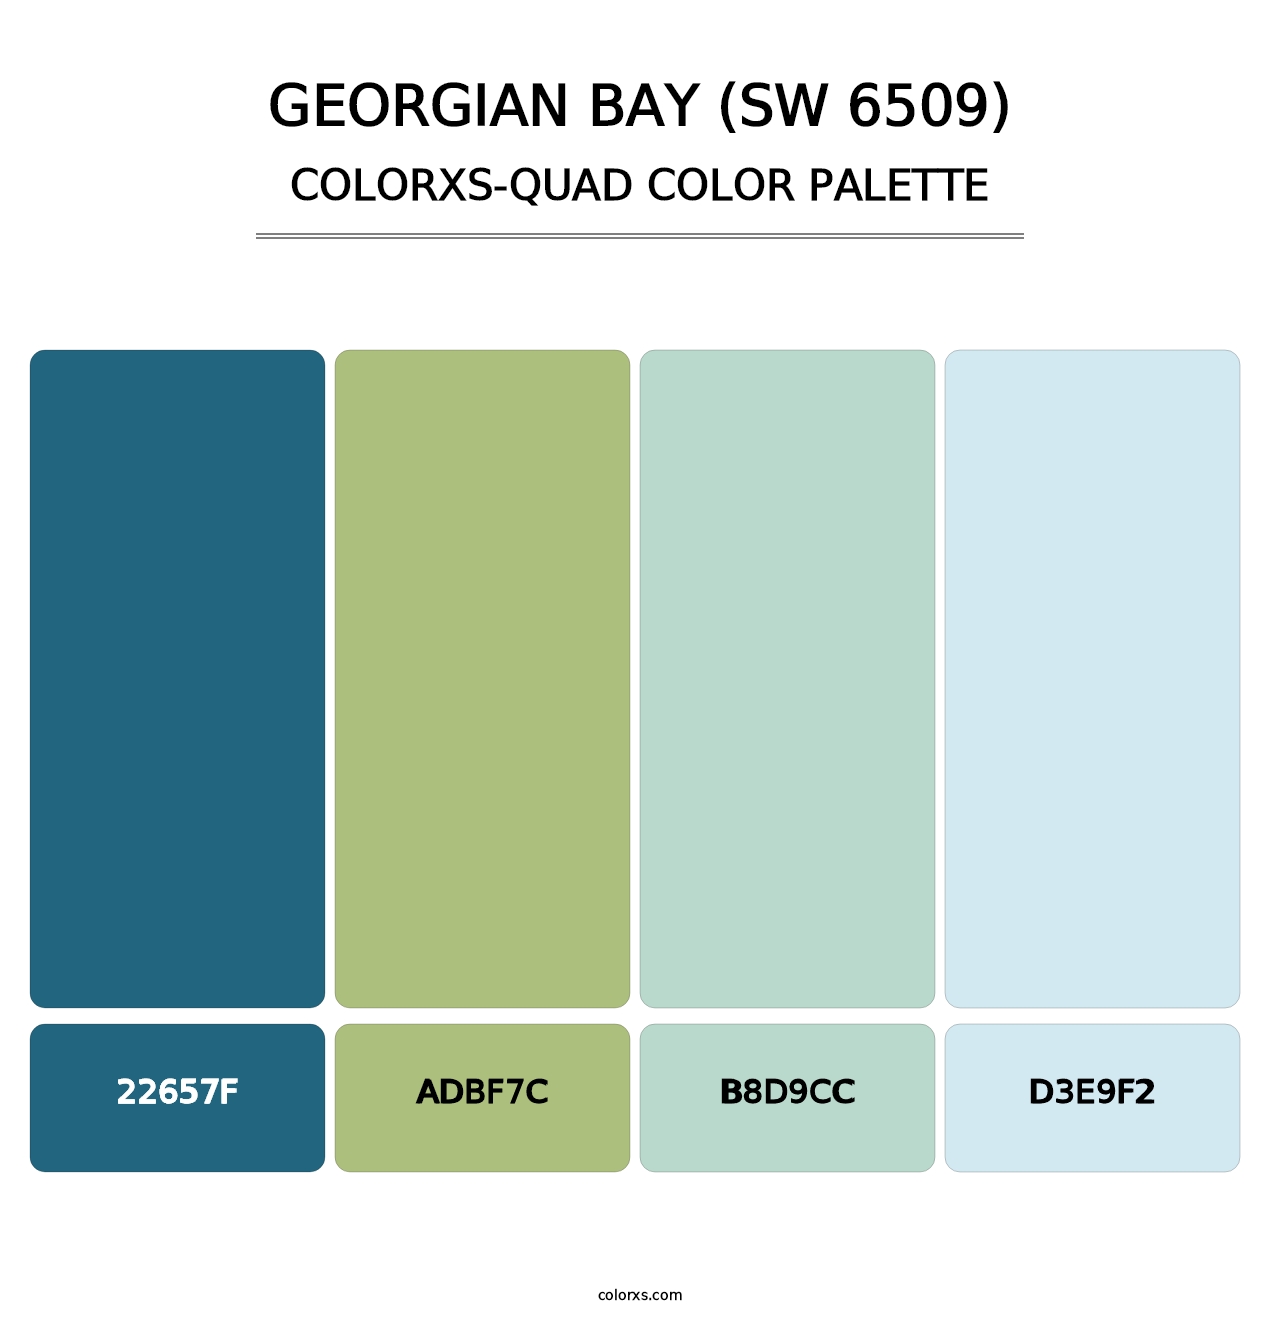 Georgian Bay (SW 6509) - Colorxs Quad Palette